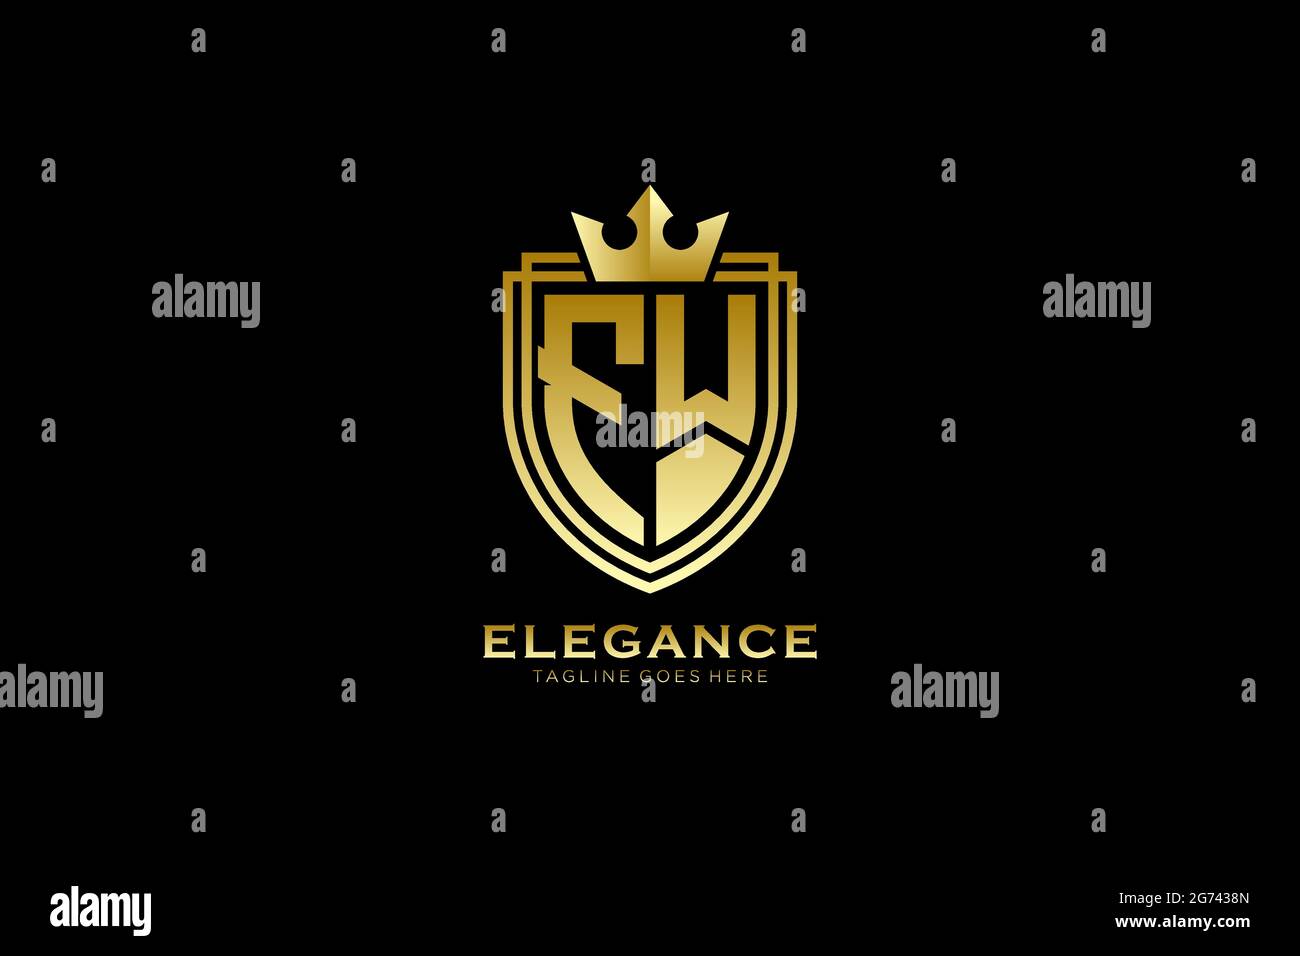 FW Elegantes Luxus-Monogramm-Logo oder Badge-Vorlage mit Rollen und königlicher Krone - perfekt für luxuriöse Branding-Projekte Stock Vektor